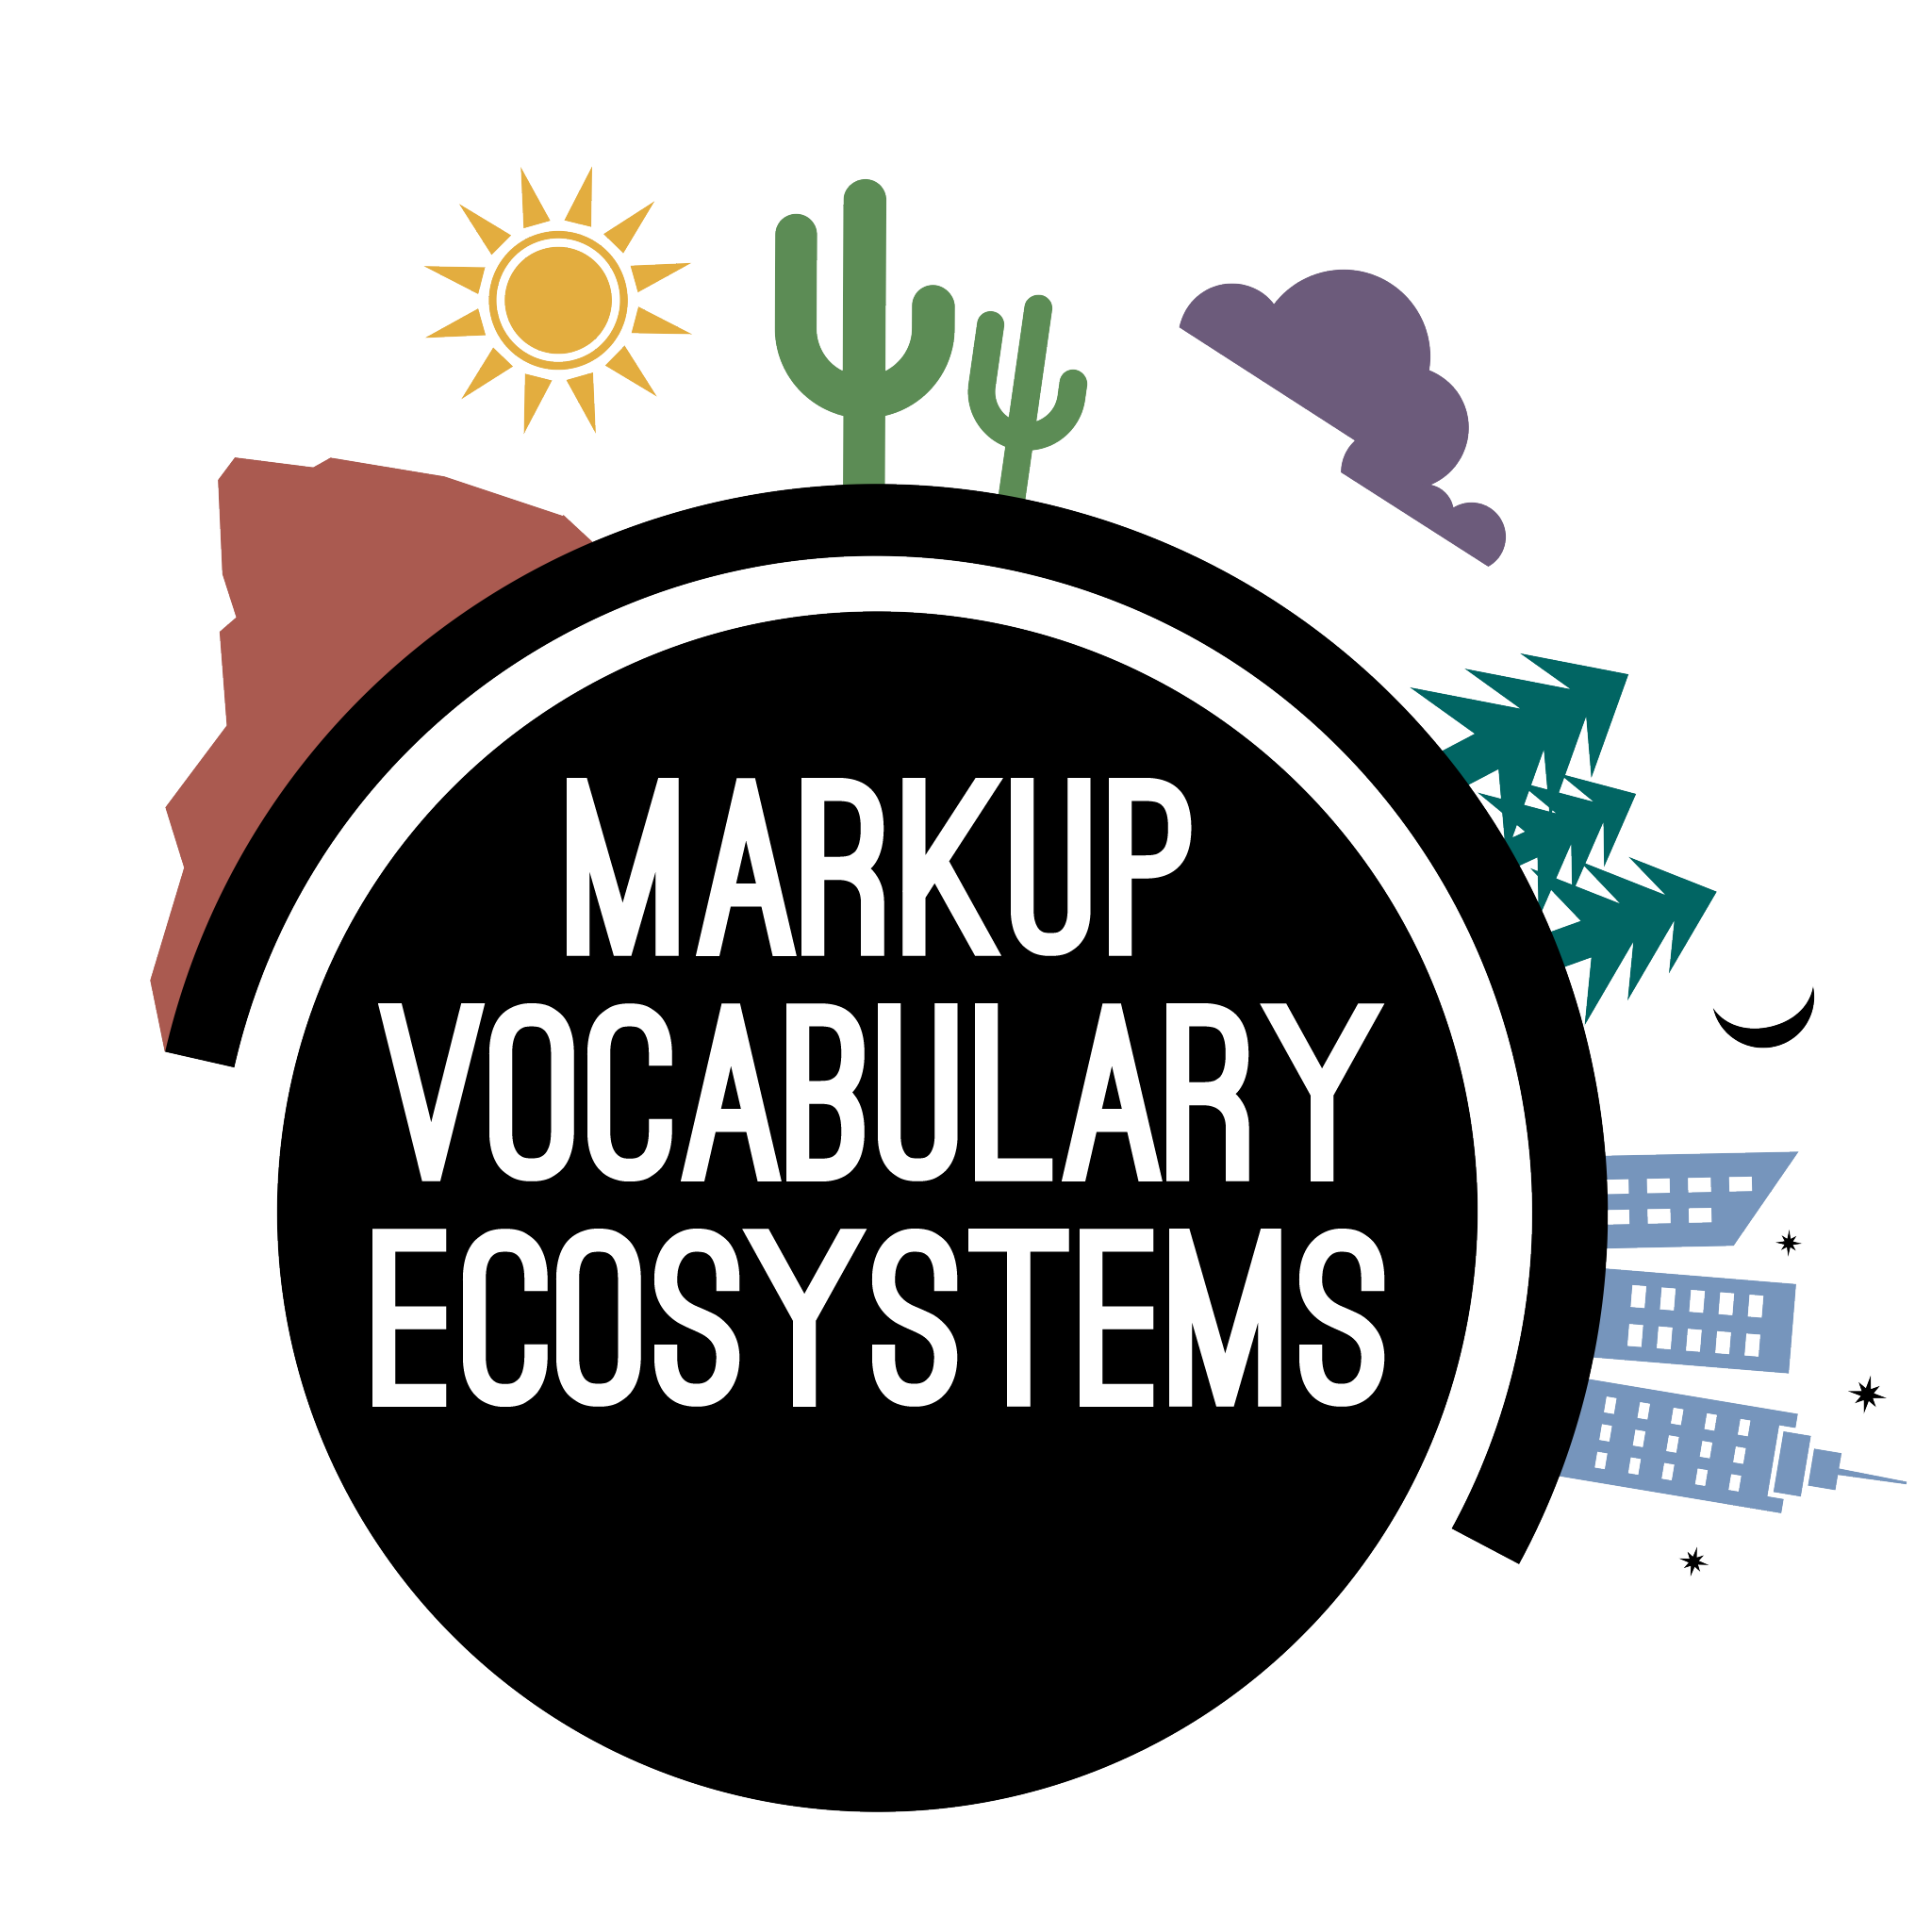 Symposium on Markup Vocabulary Ecosystems logo